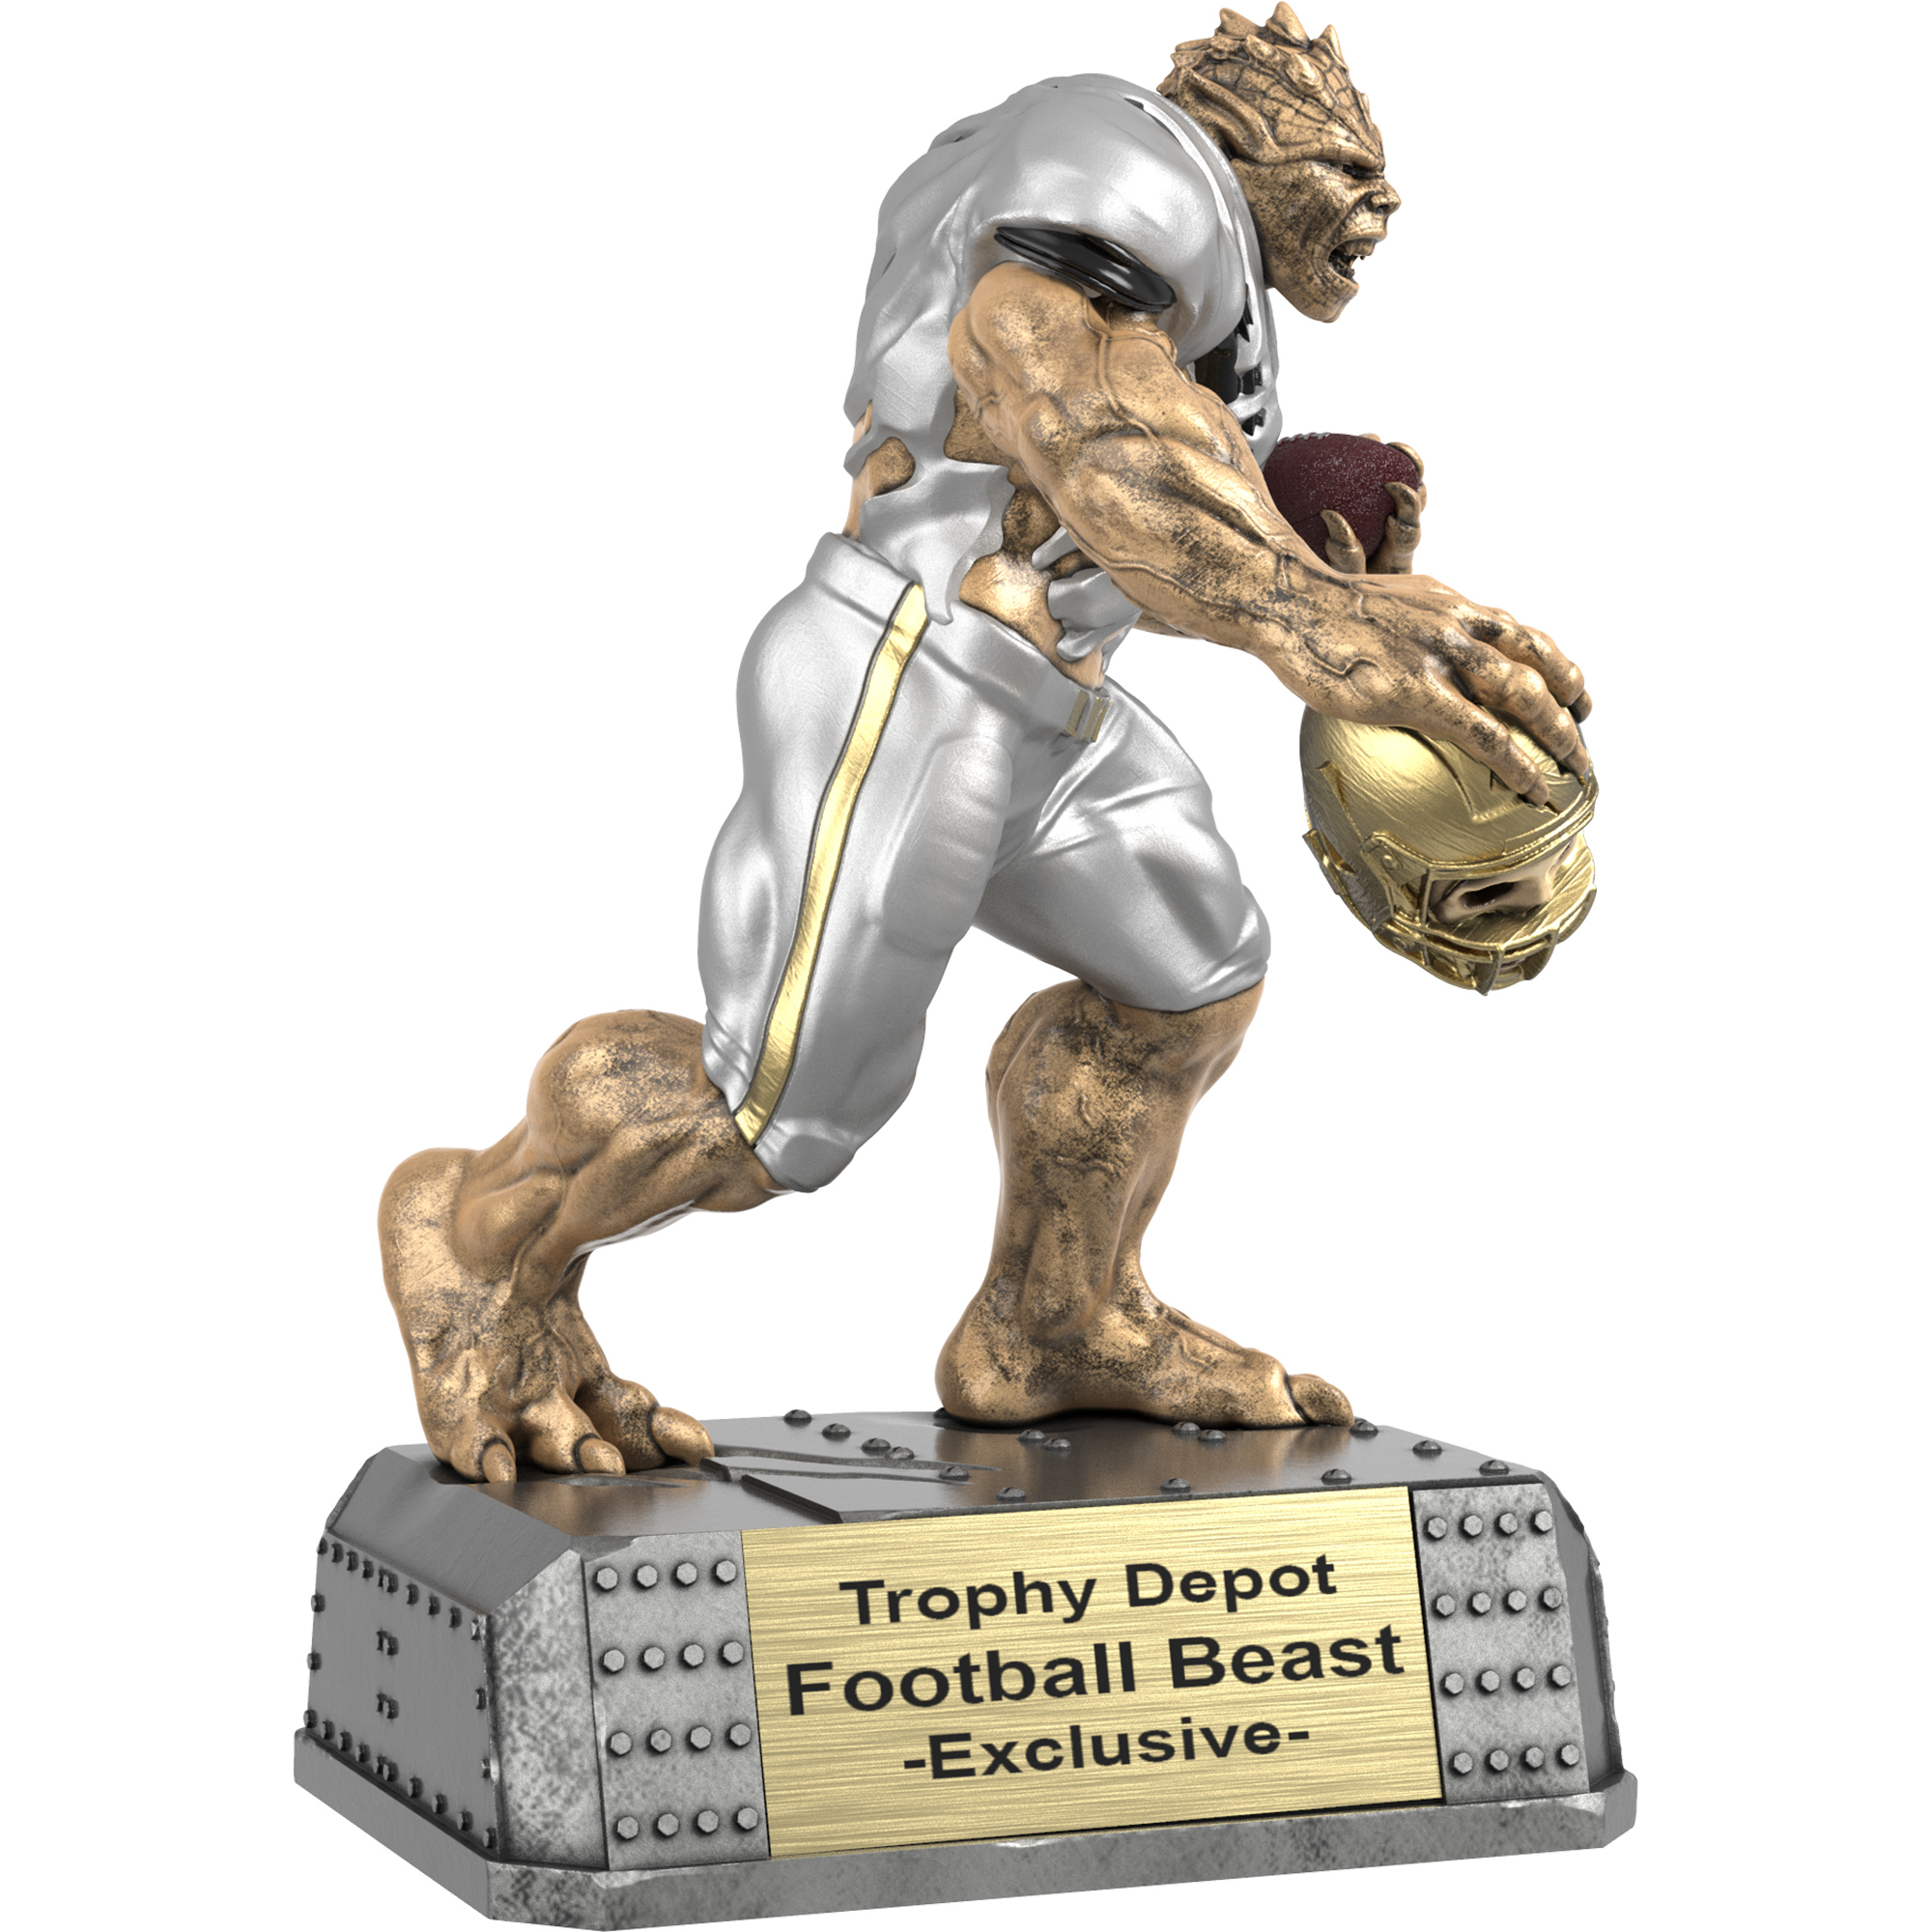 Football Beast, Monster Sculpture Trophy - 6.75 inch